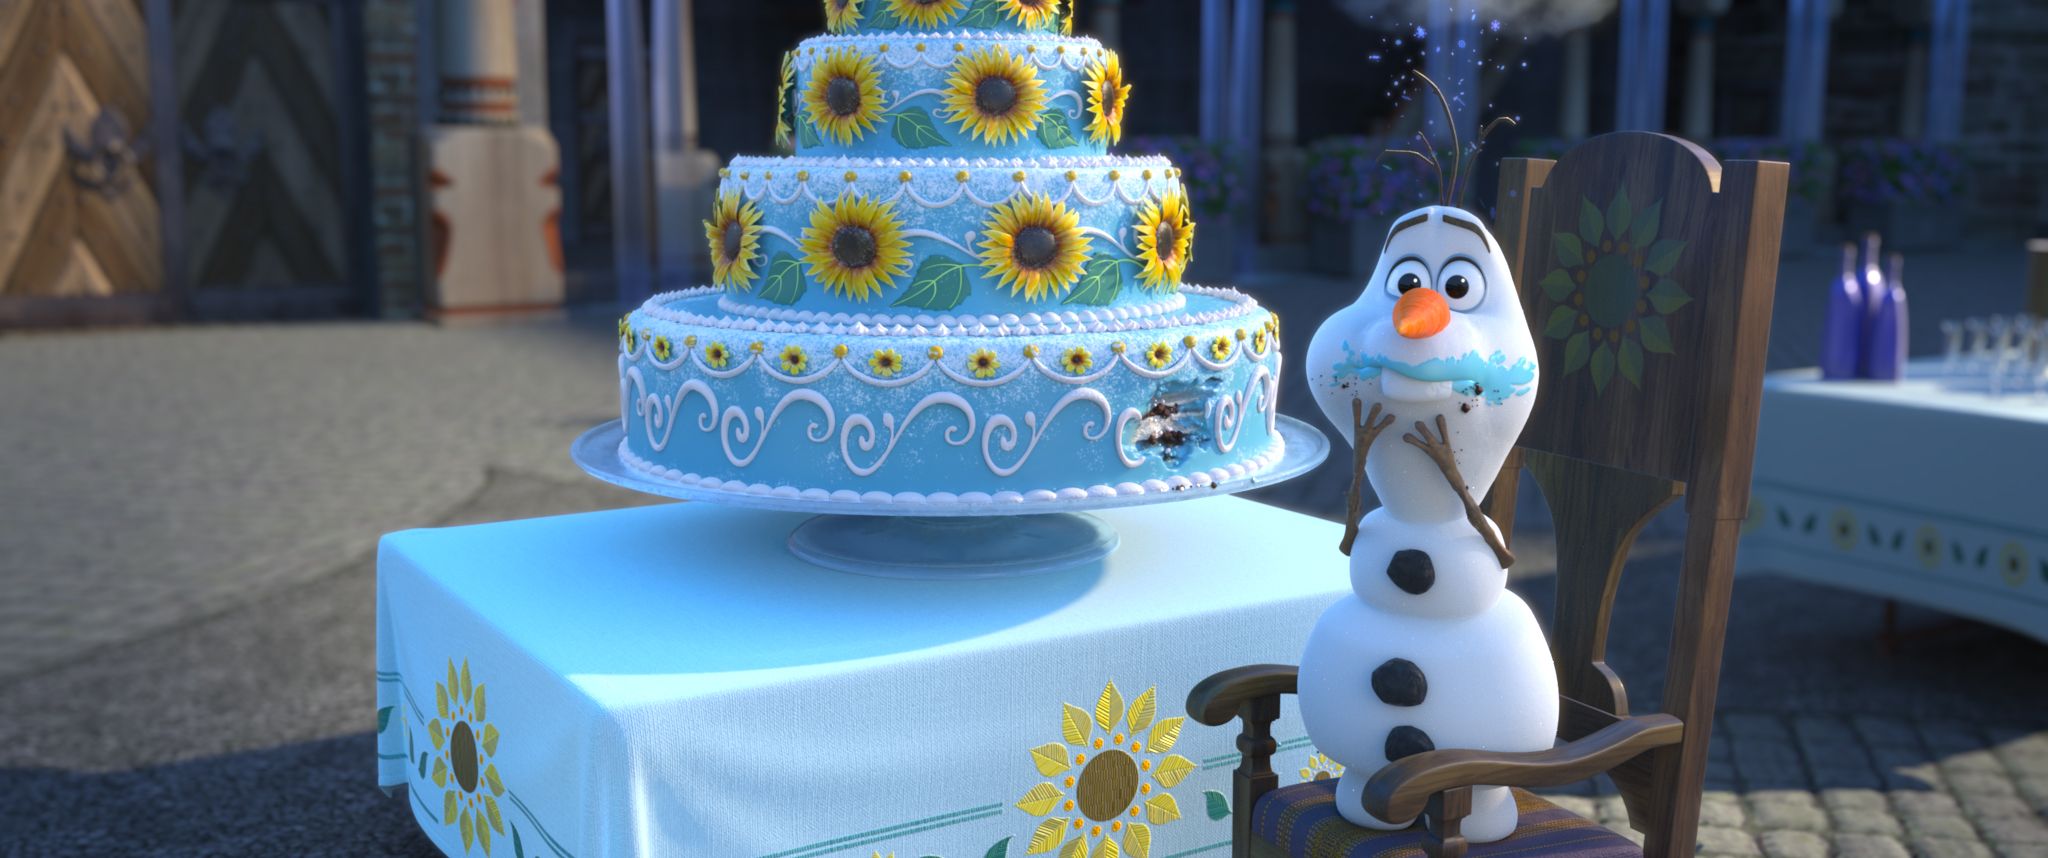 ディズニー スタジオ アニメーション 公式 アナの誕生日ケーキ でも 少し欠けているところが オラフの盗み食いに注意 ケーキの日 アナと雪の女王 エルサのサプライズ T Co Us5psokirs Twitter